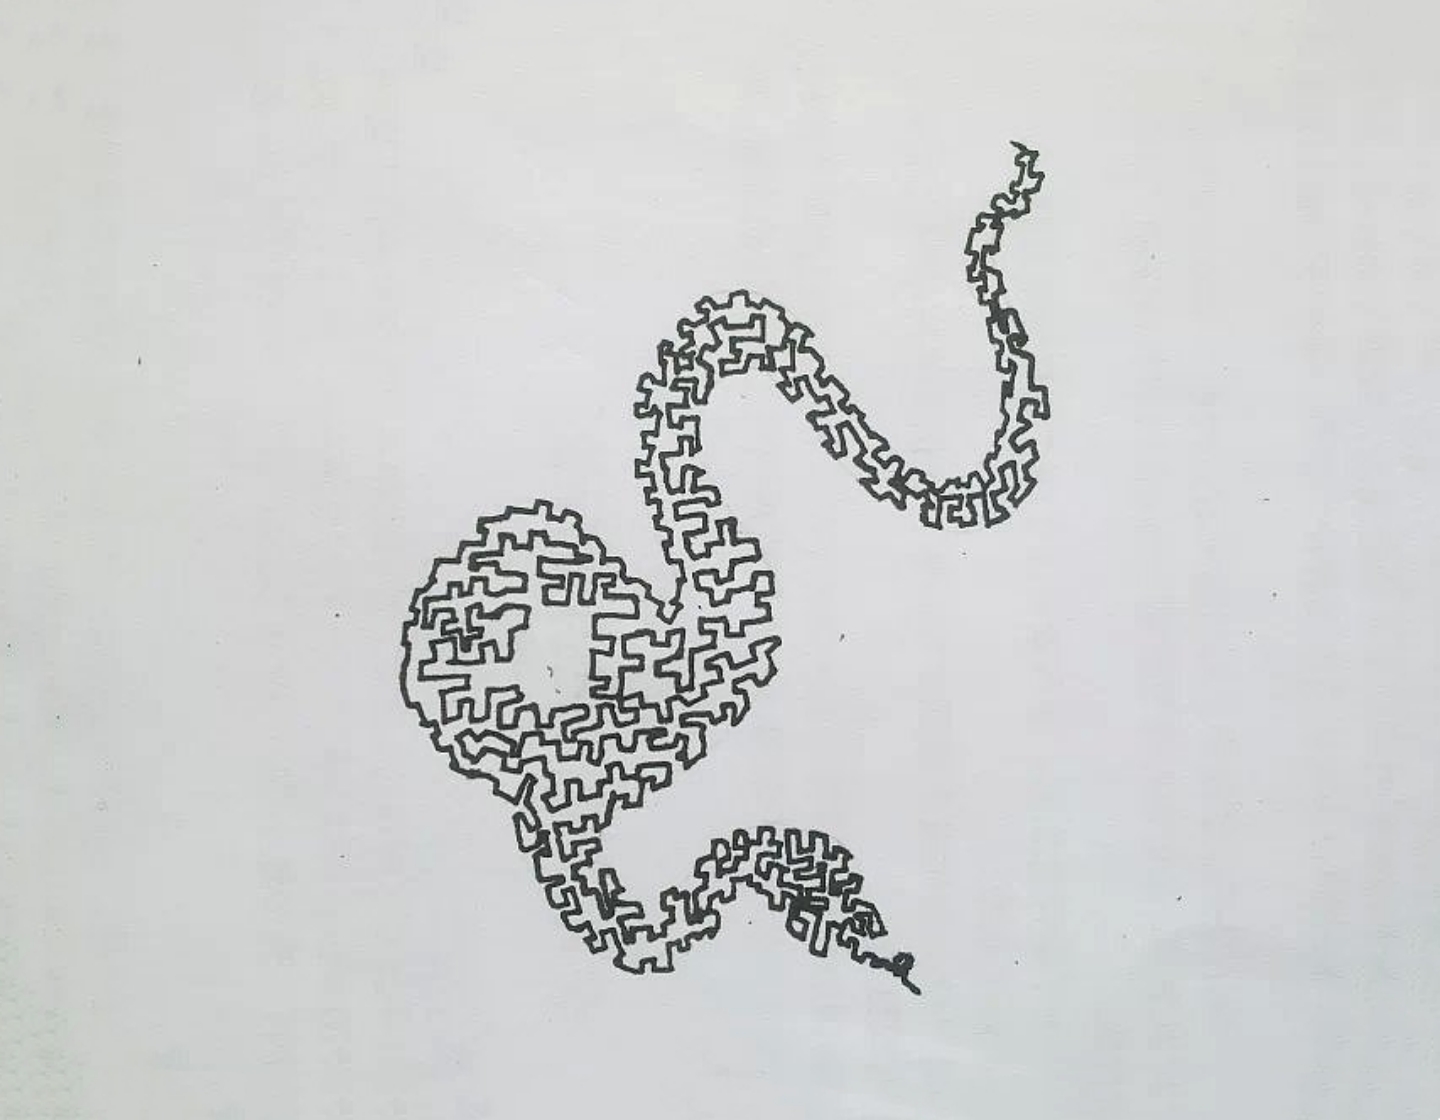 十二生肖一笔画——蛇